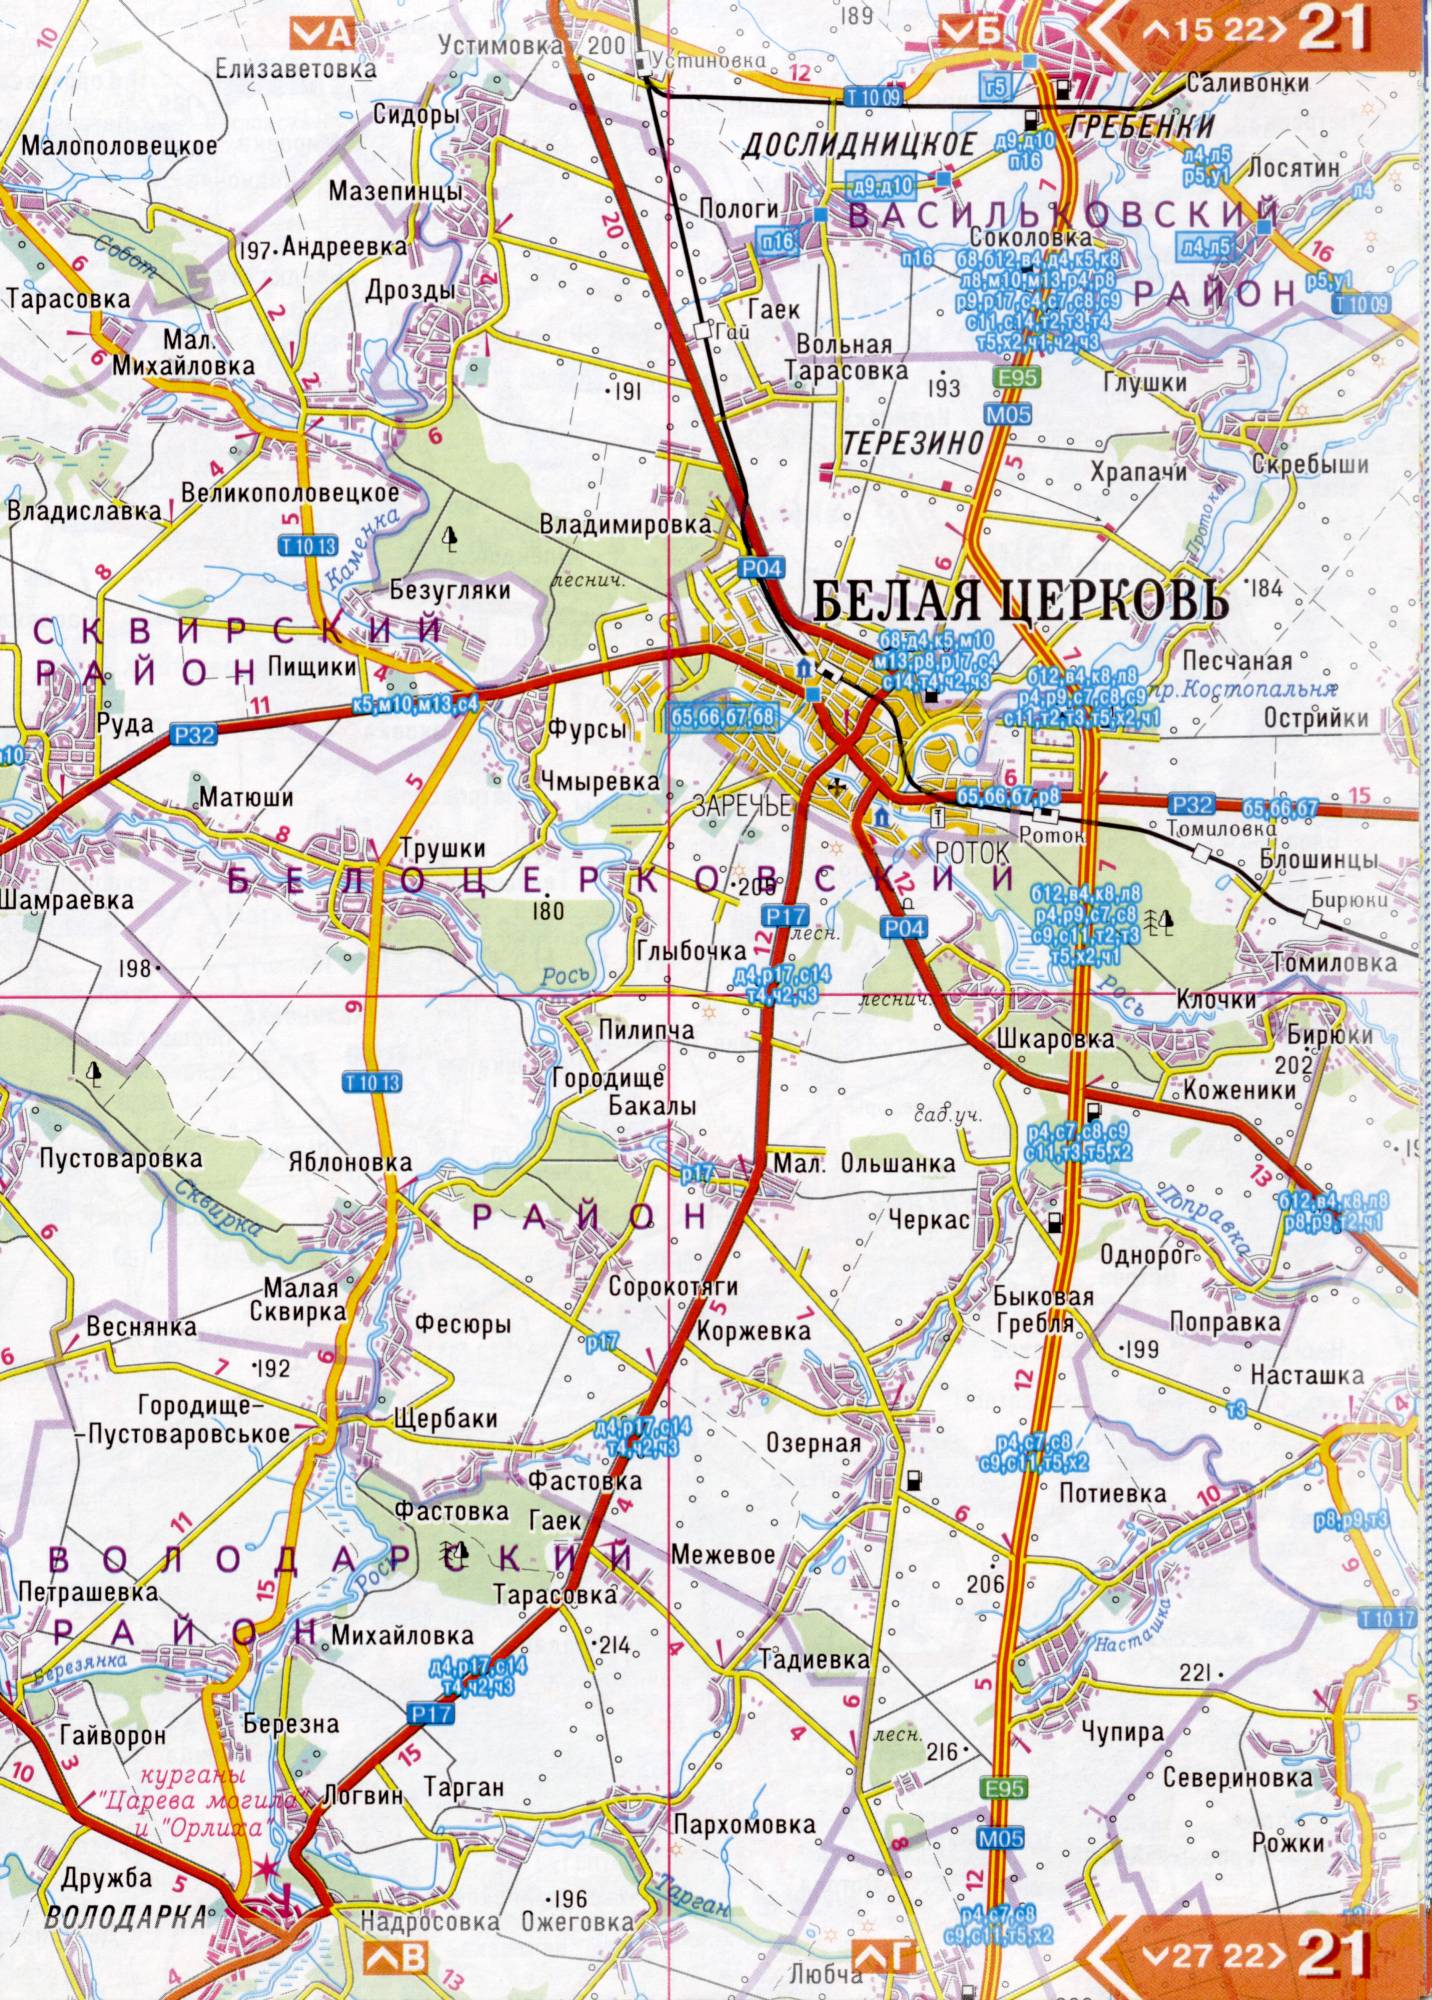 Atlas von der Region Kiew. Eine detaillierte Karte der Region Kiew von dem Atlas von Autobahnen. Kiewer Gebiet auf einer detaillierten Karte Maßstab 1cm = 3km. Frei, B4